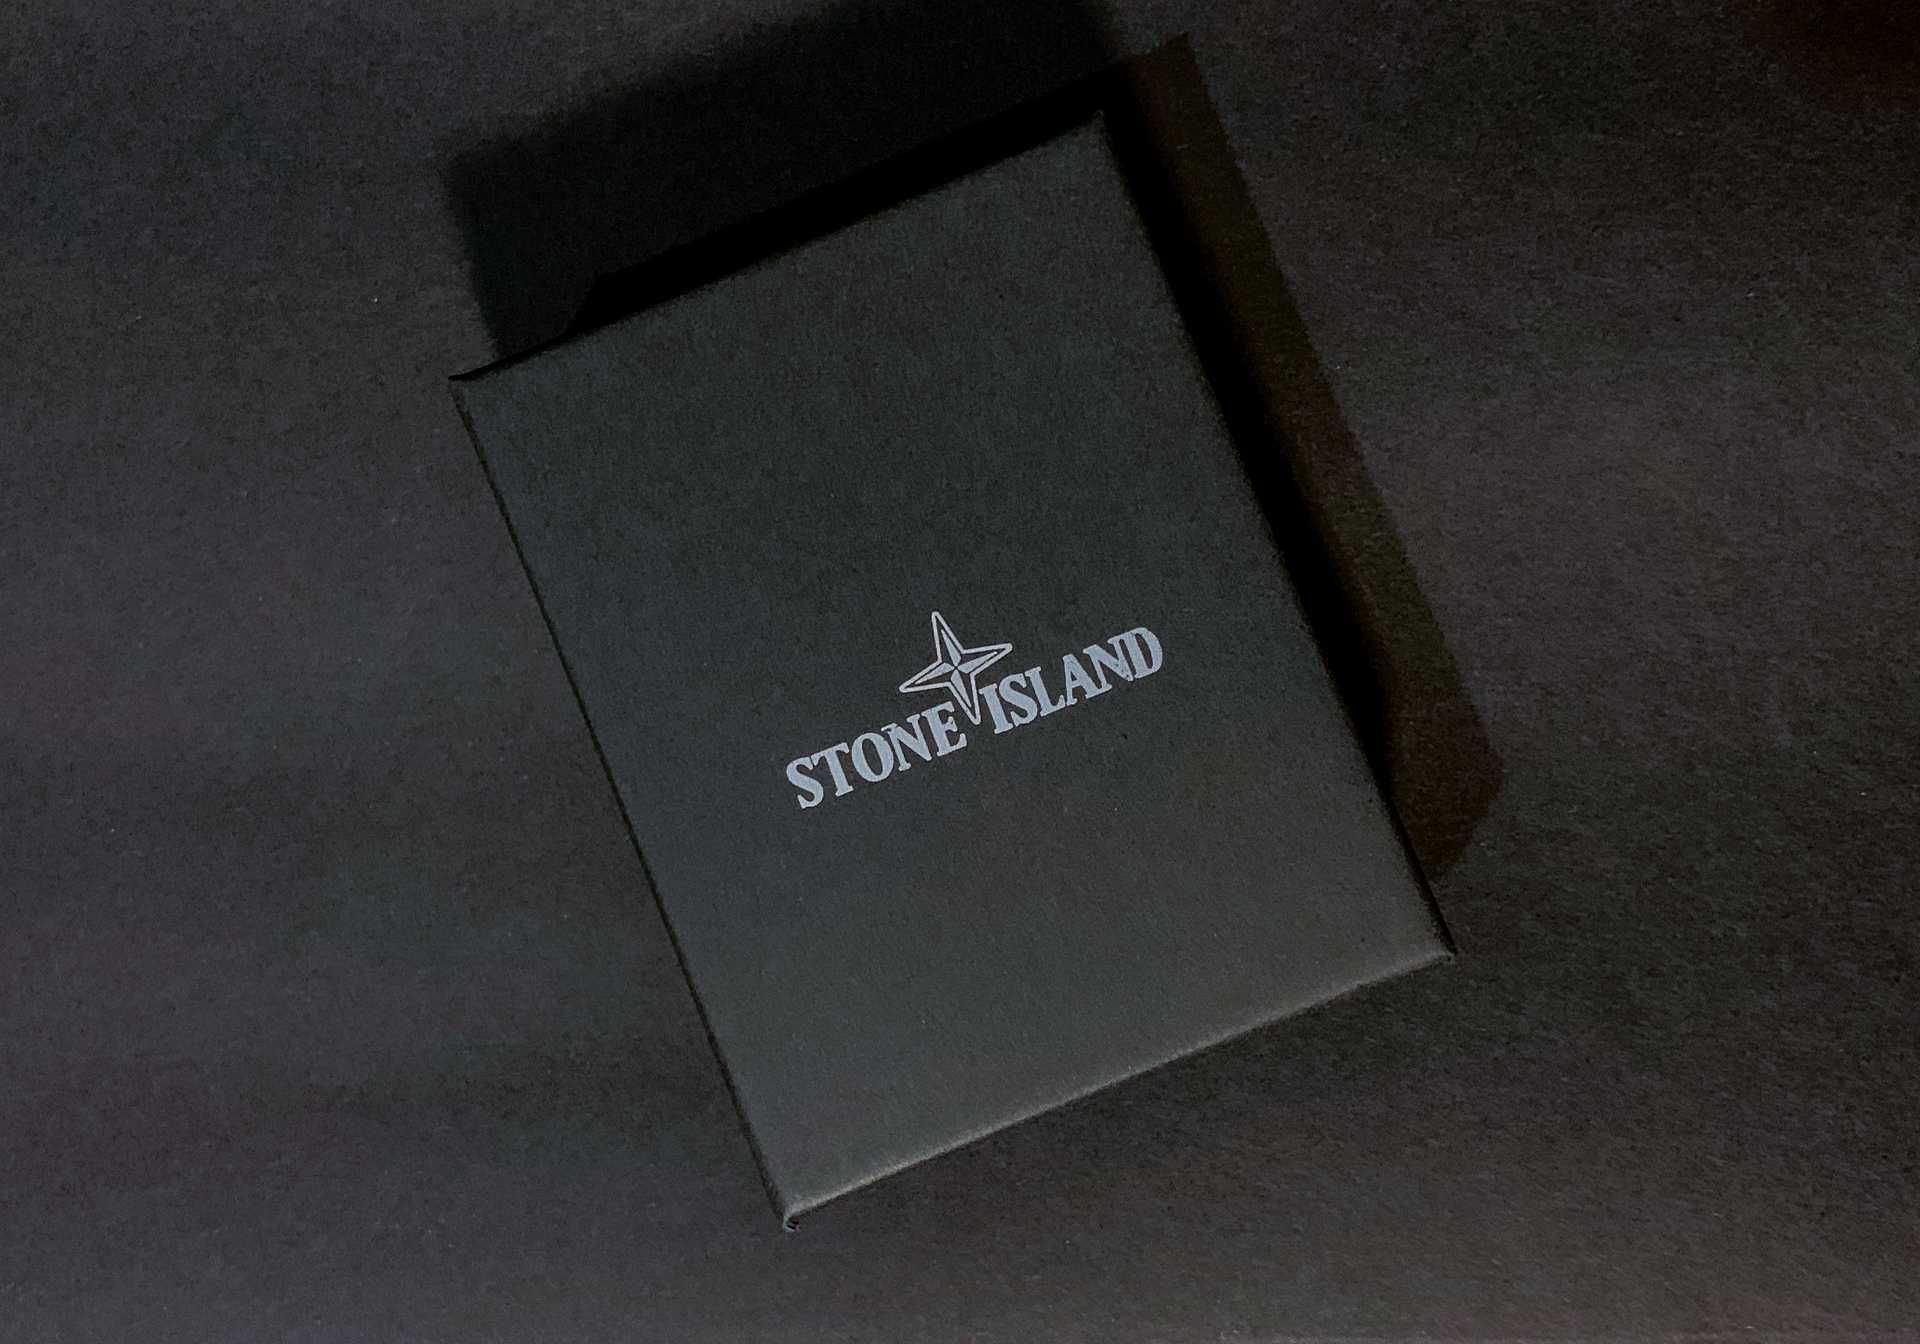 Підвіска кулон стон айланд на шию, ланцюжок «STONE ISLAND» з коробкою